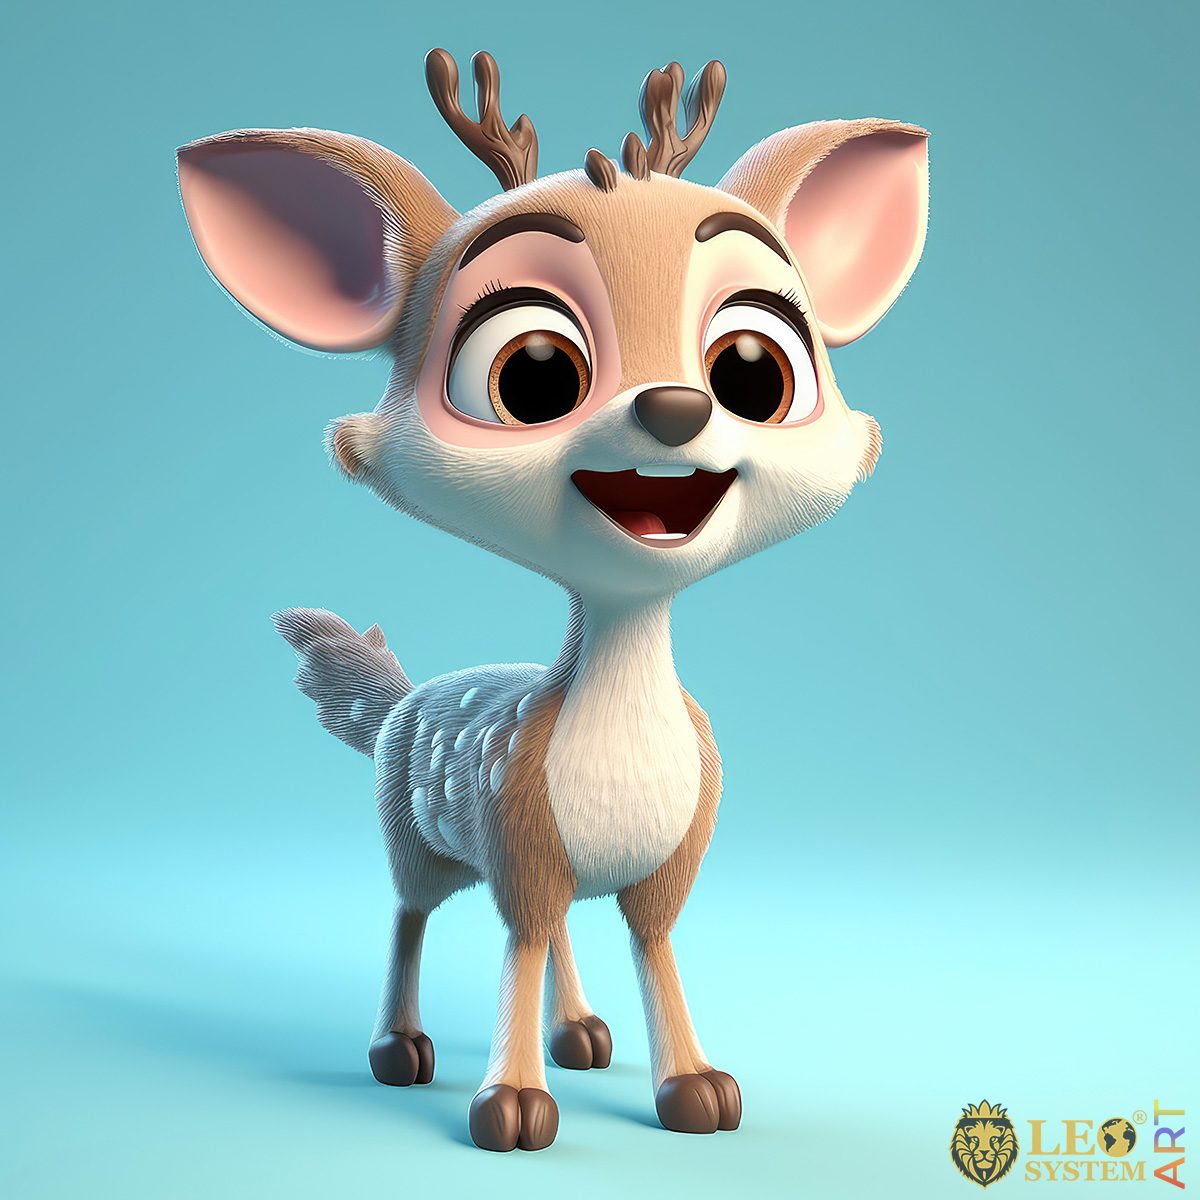 Beautiful 3D Deer with big brown eyes